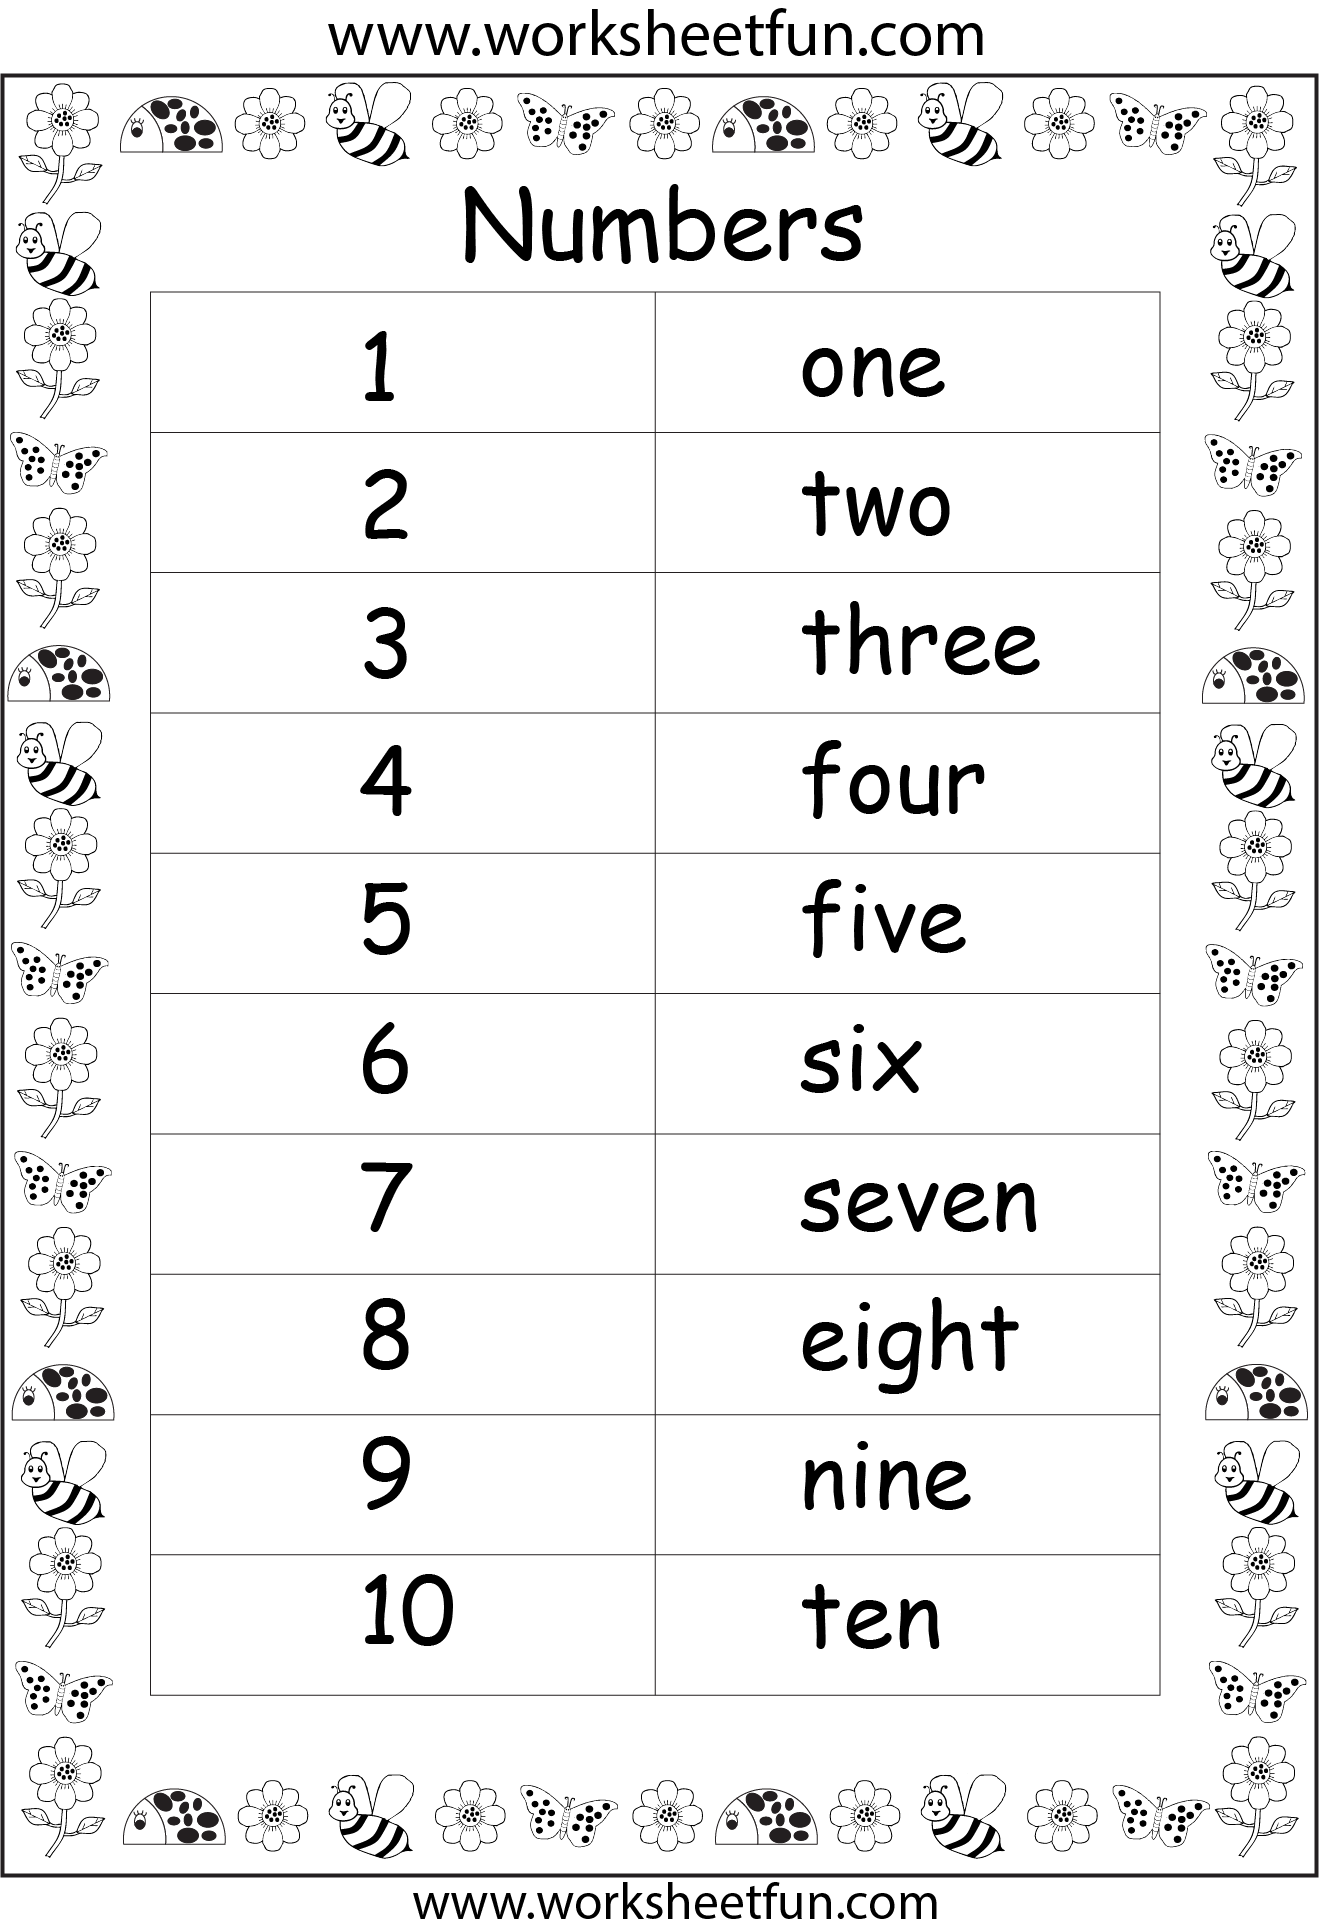 Number Words Printable Worksheets